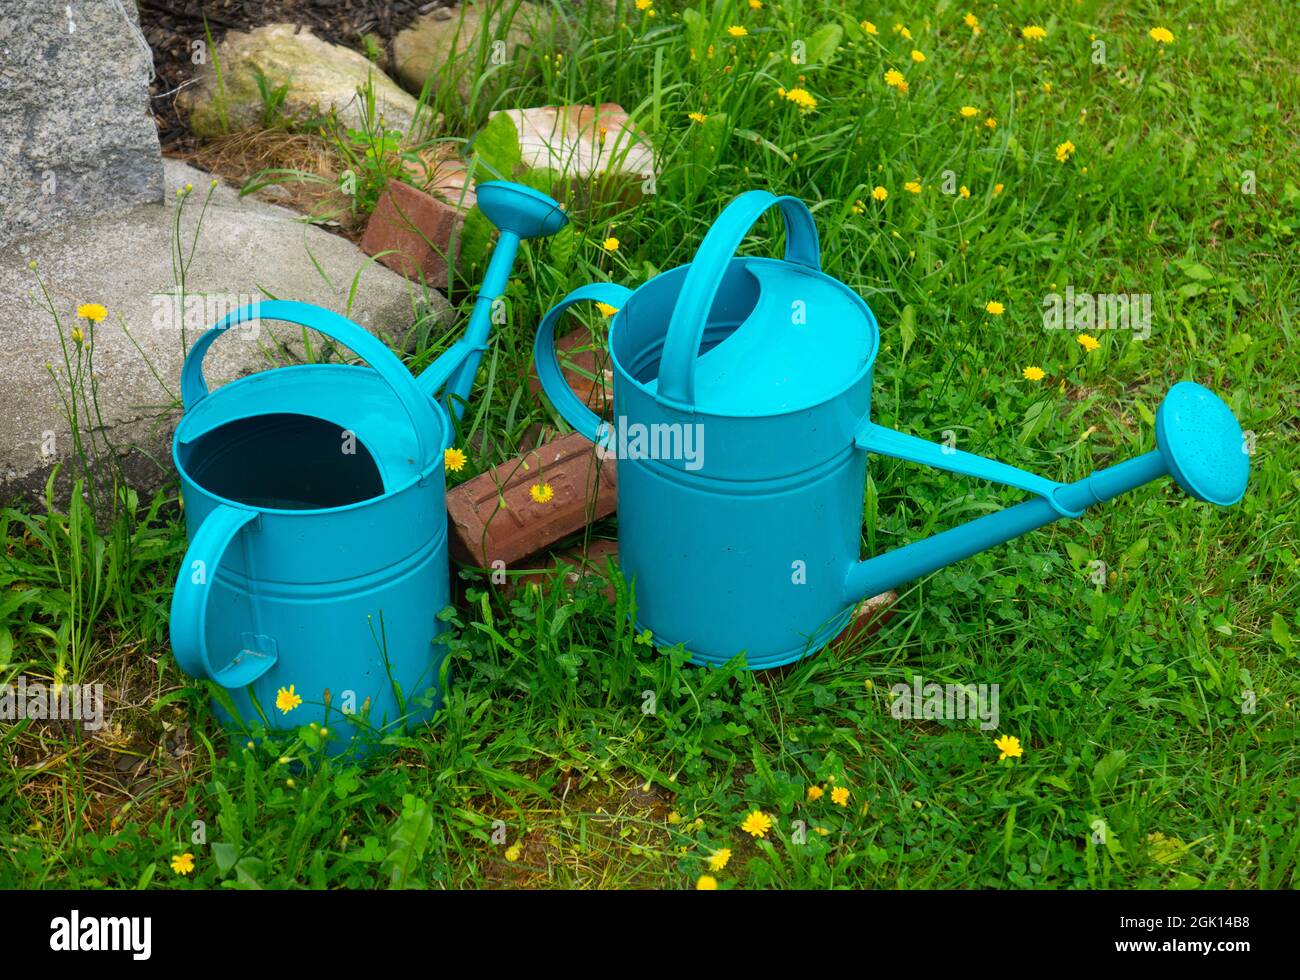 Botes de riego azules en un patio. Foto de stock